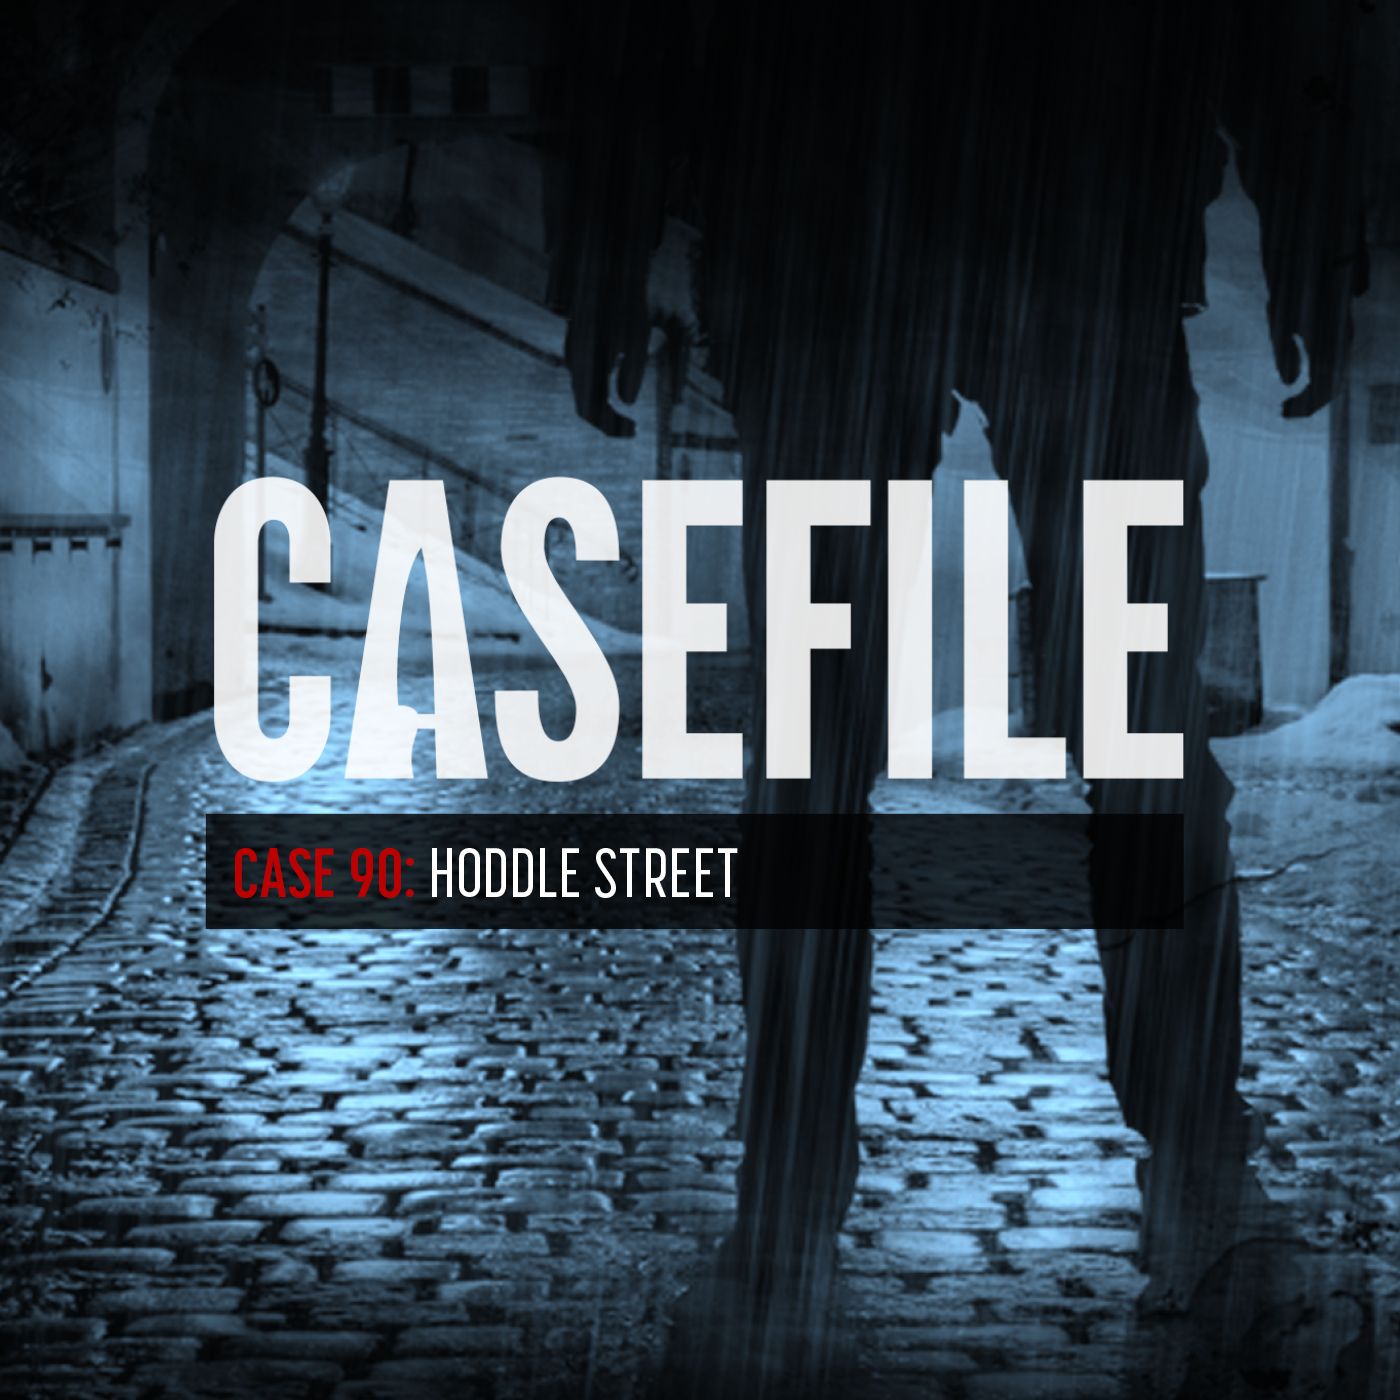 Case 90: Hoddle Street